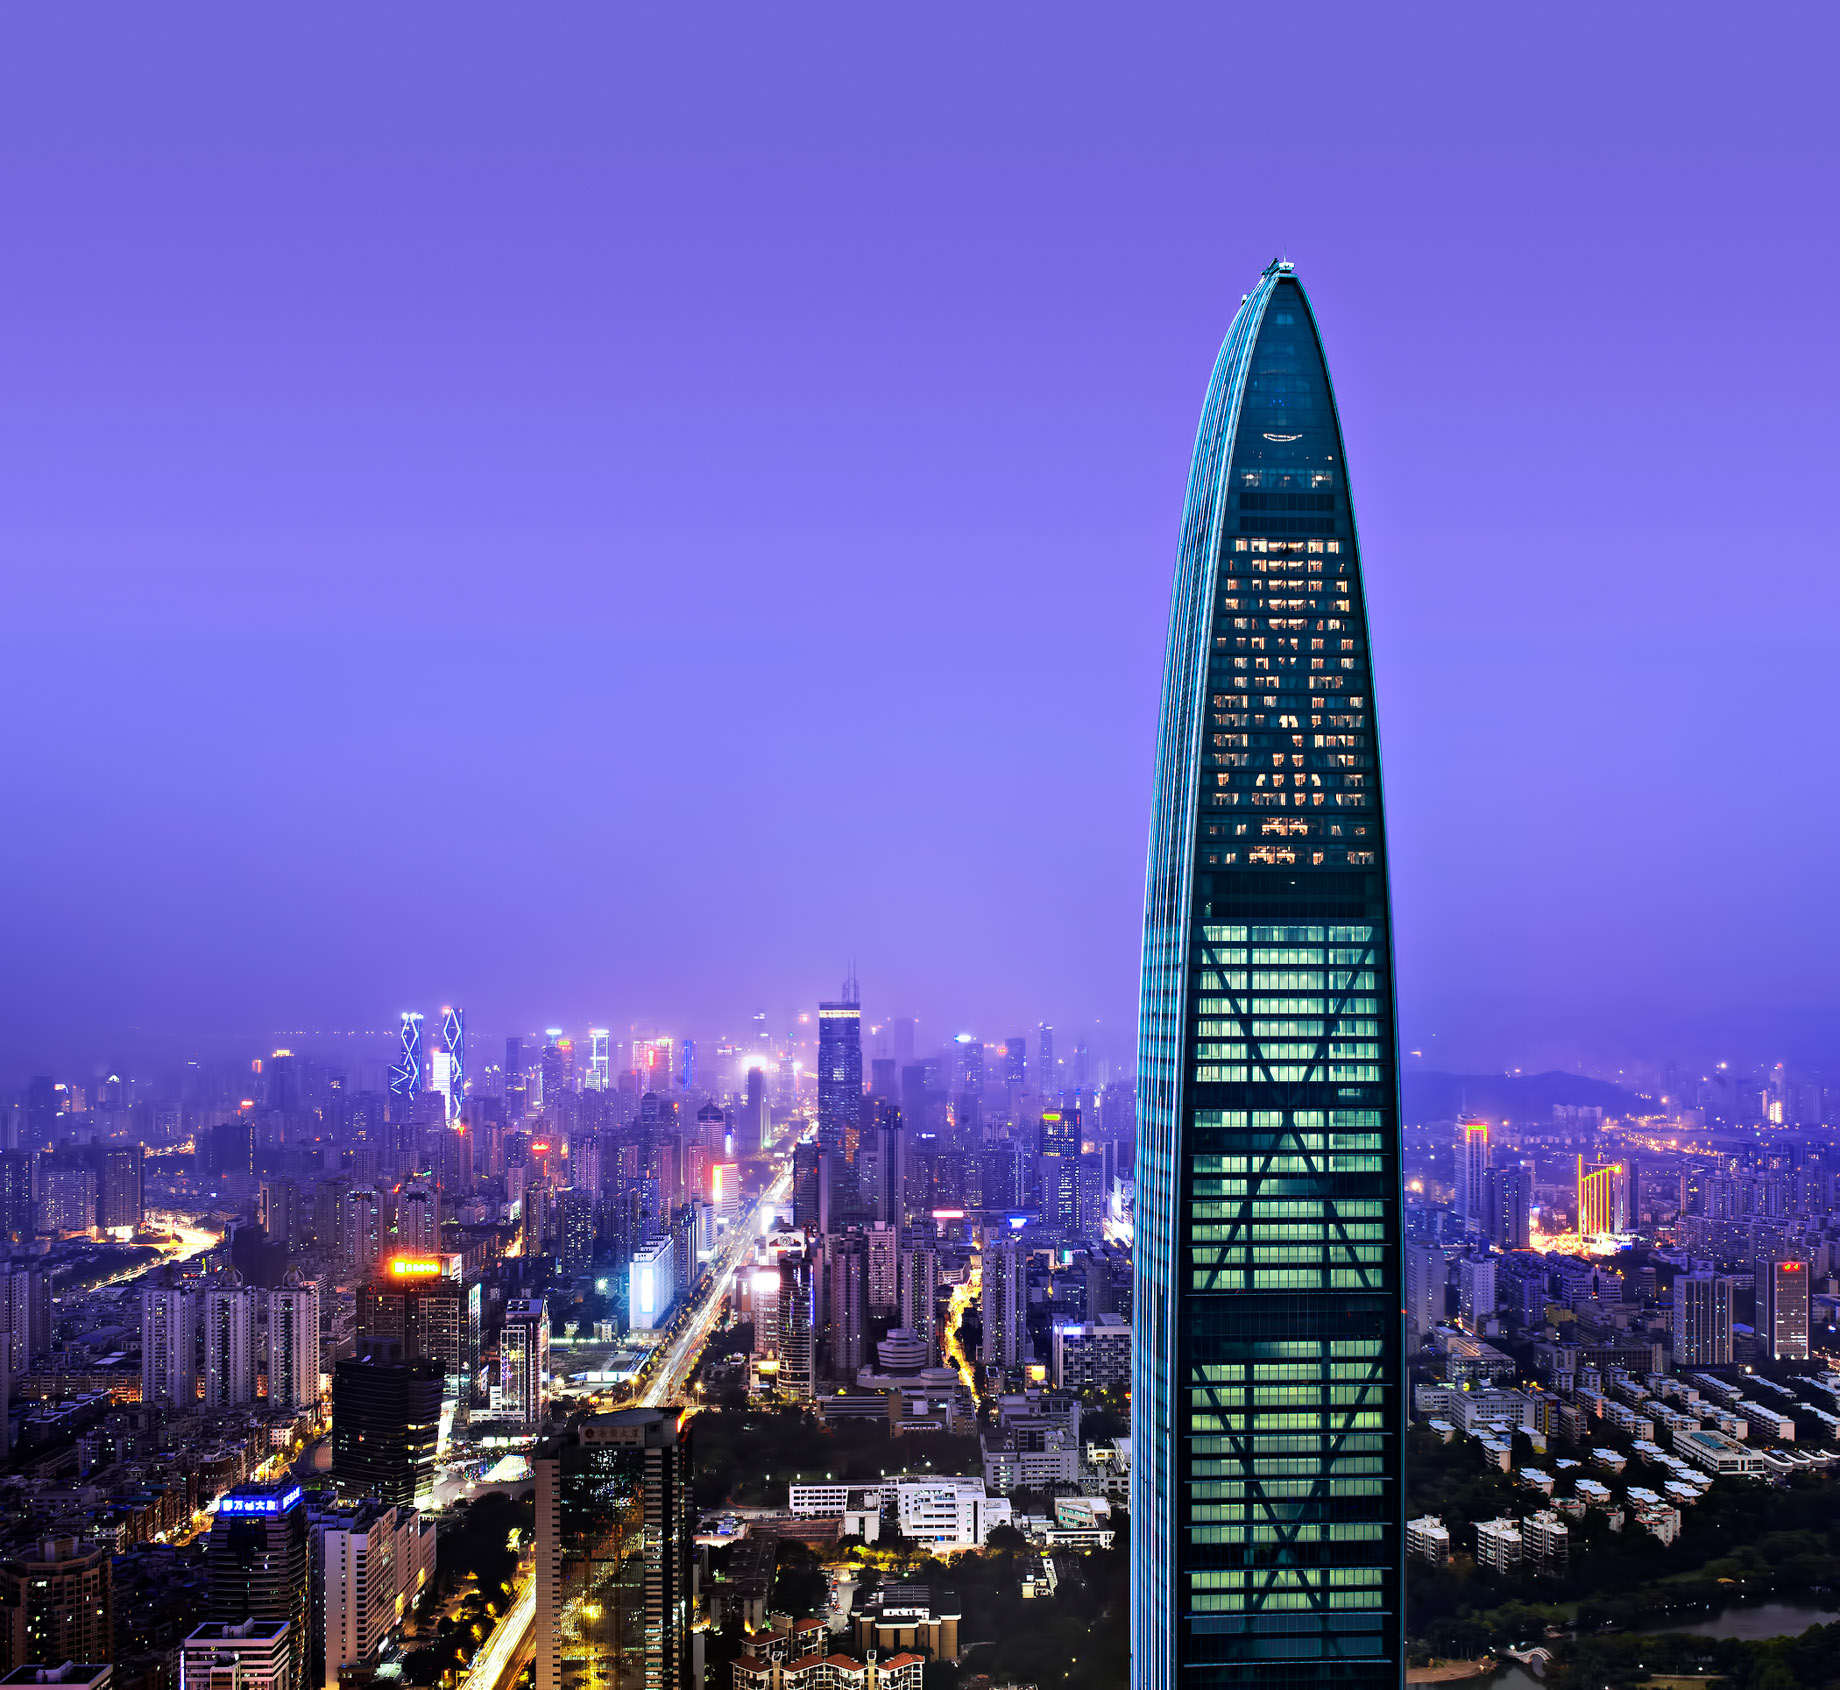 The St. Regis Shenzhen Luxury Hotel - Shenzhen, China